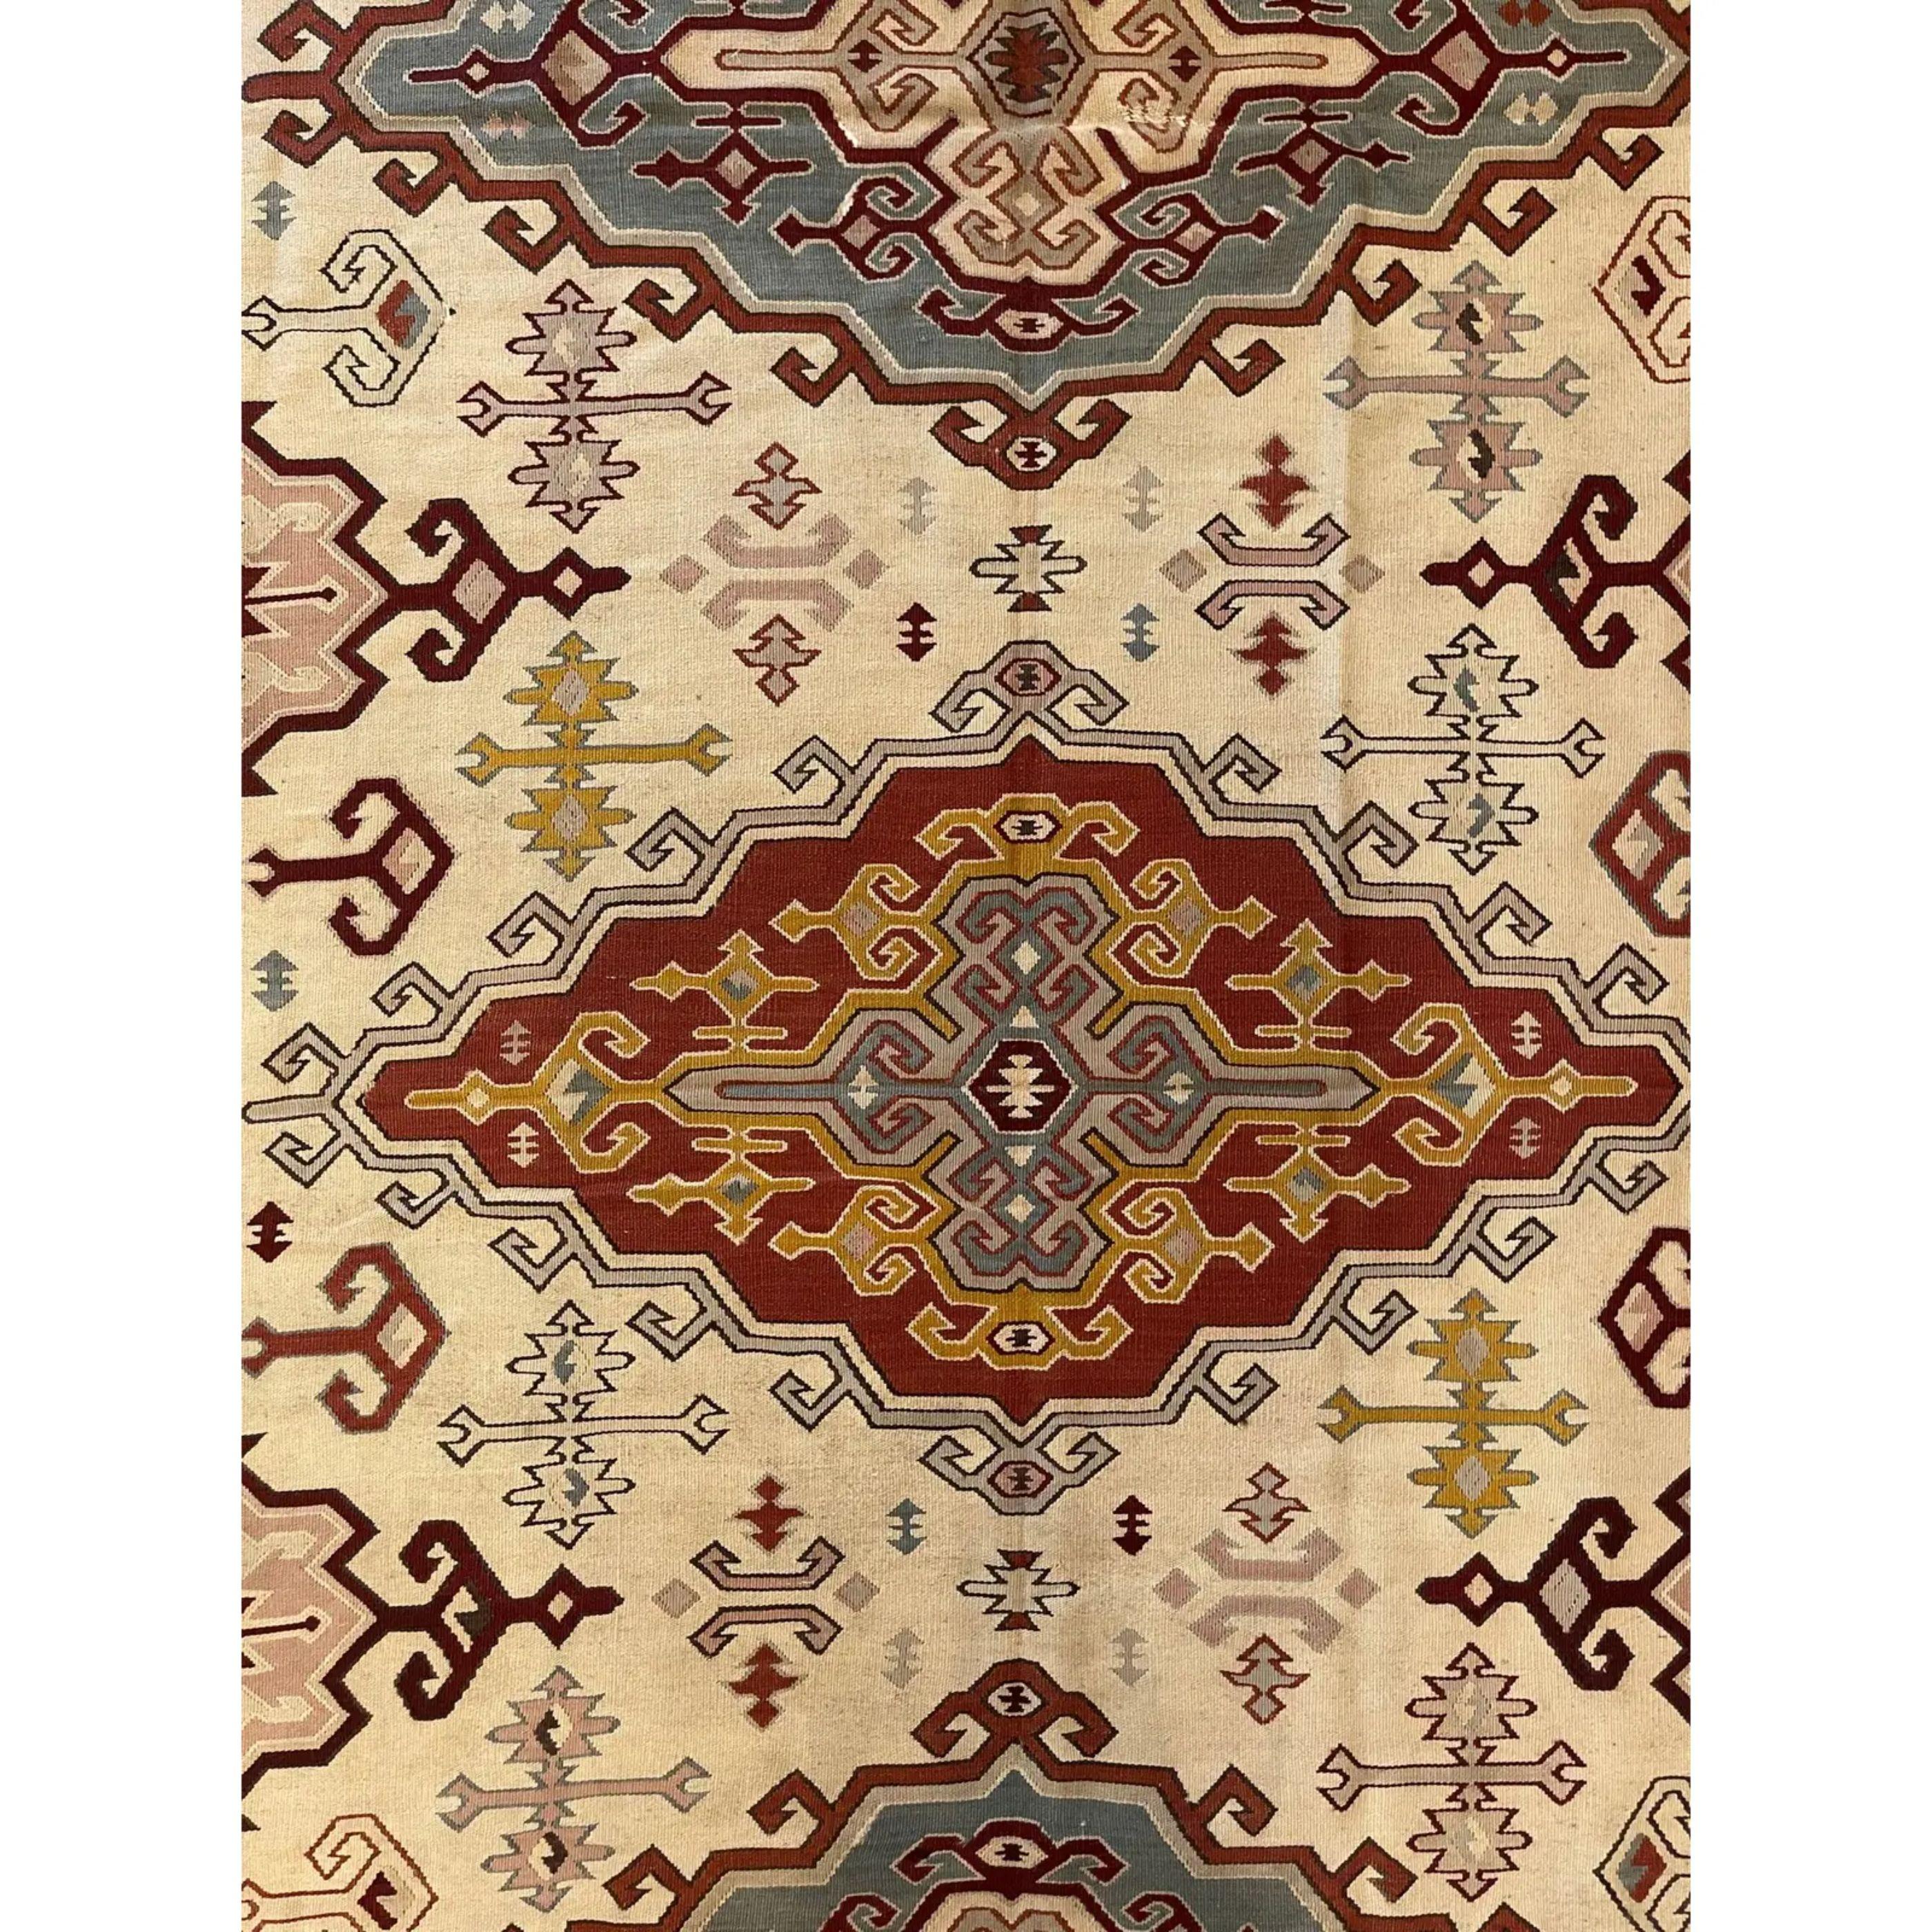 Les anciens Rug & Kilim de Bessarabie, qu'ils soient tissés en velours ou en tapisserie, comptent parmi les plus beaux tapis produits en Europe. La plupart des kilims de Bessarabie ont été tissés entre le milieu et la fin du XIXe siècle, bien que